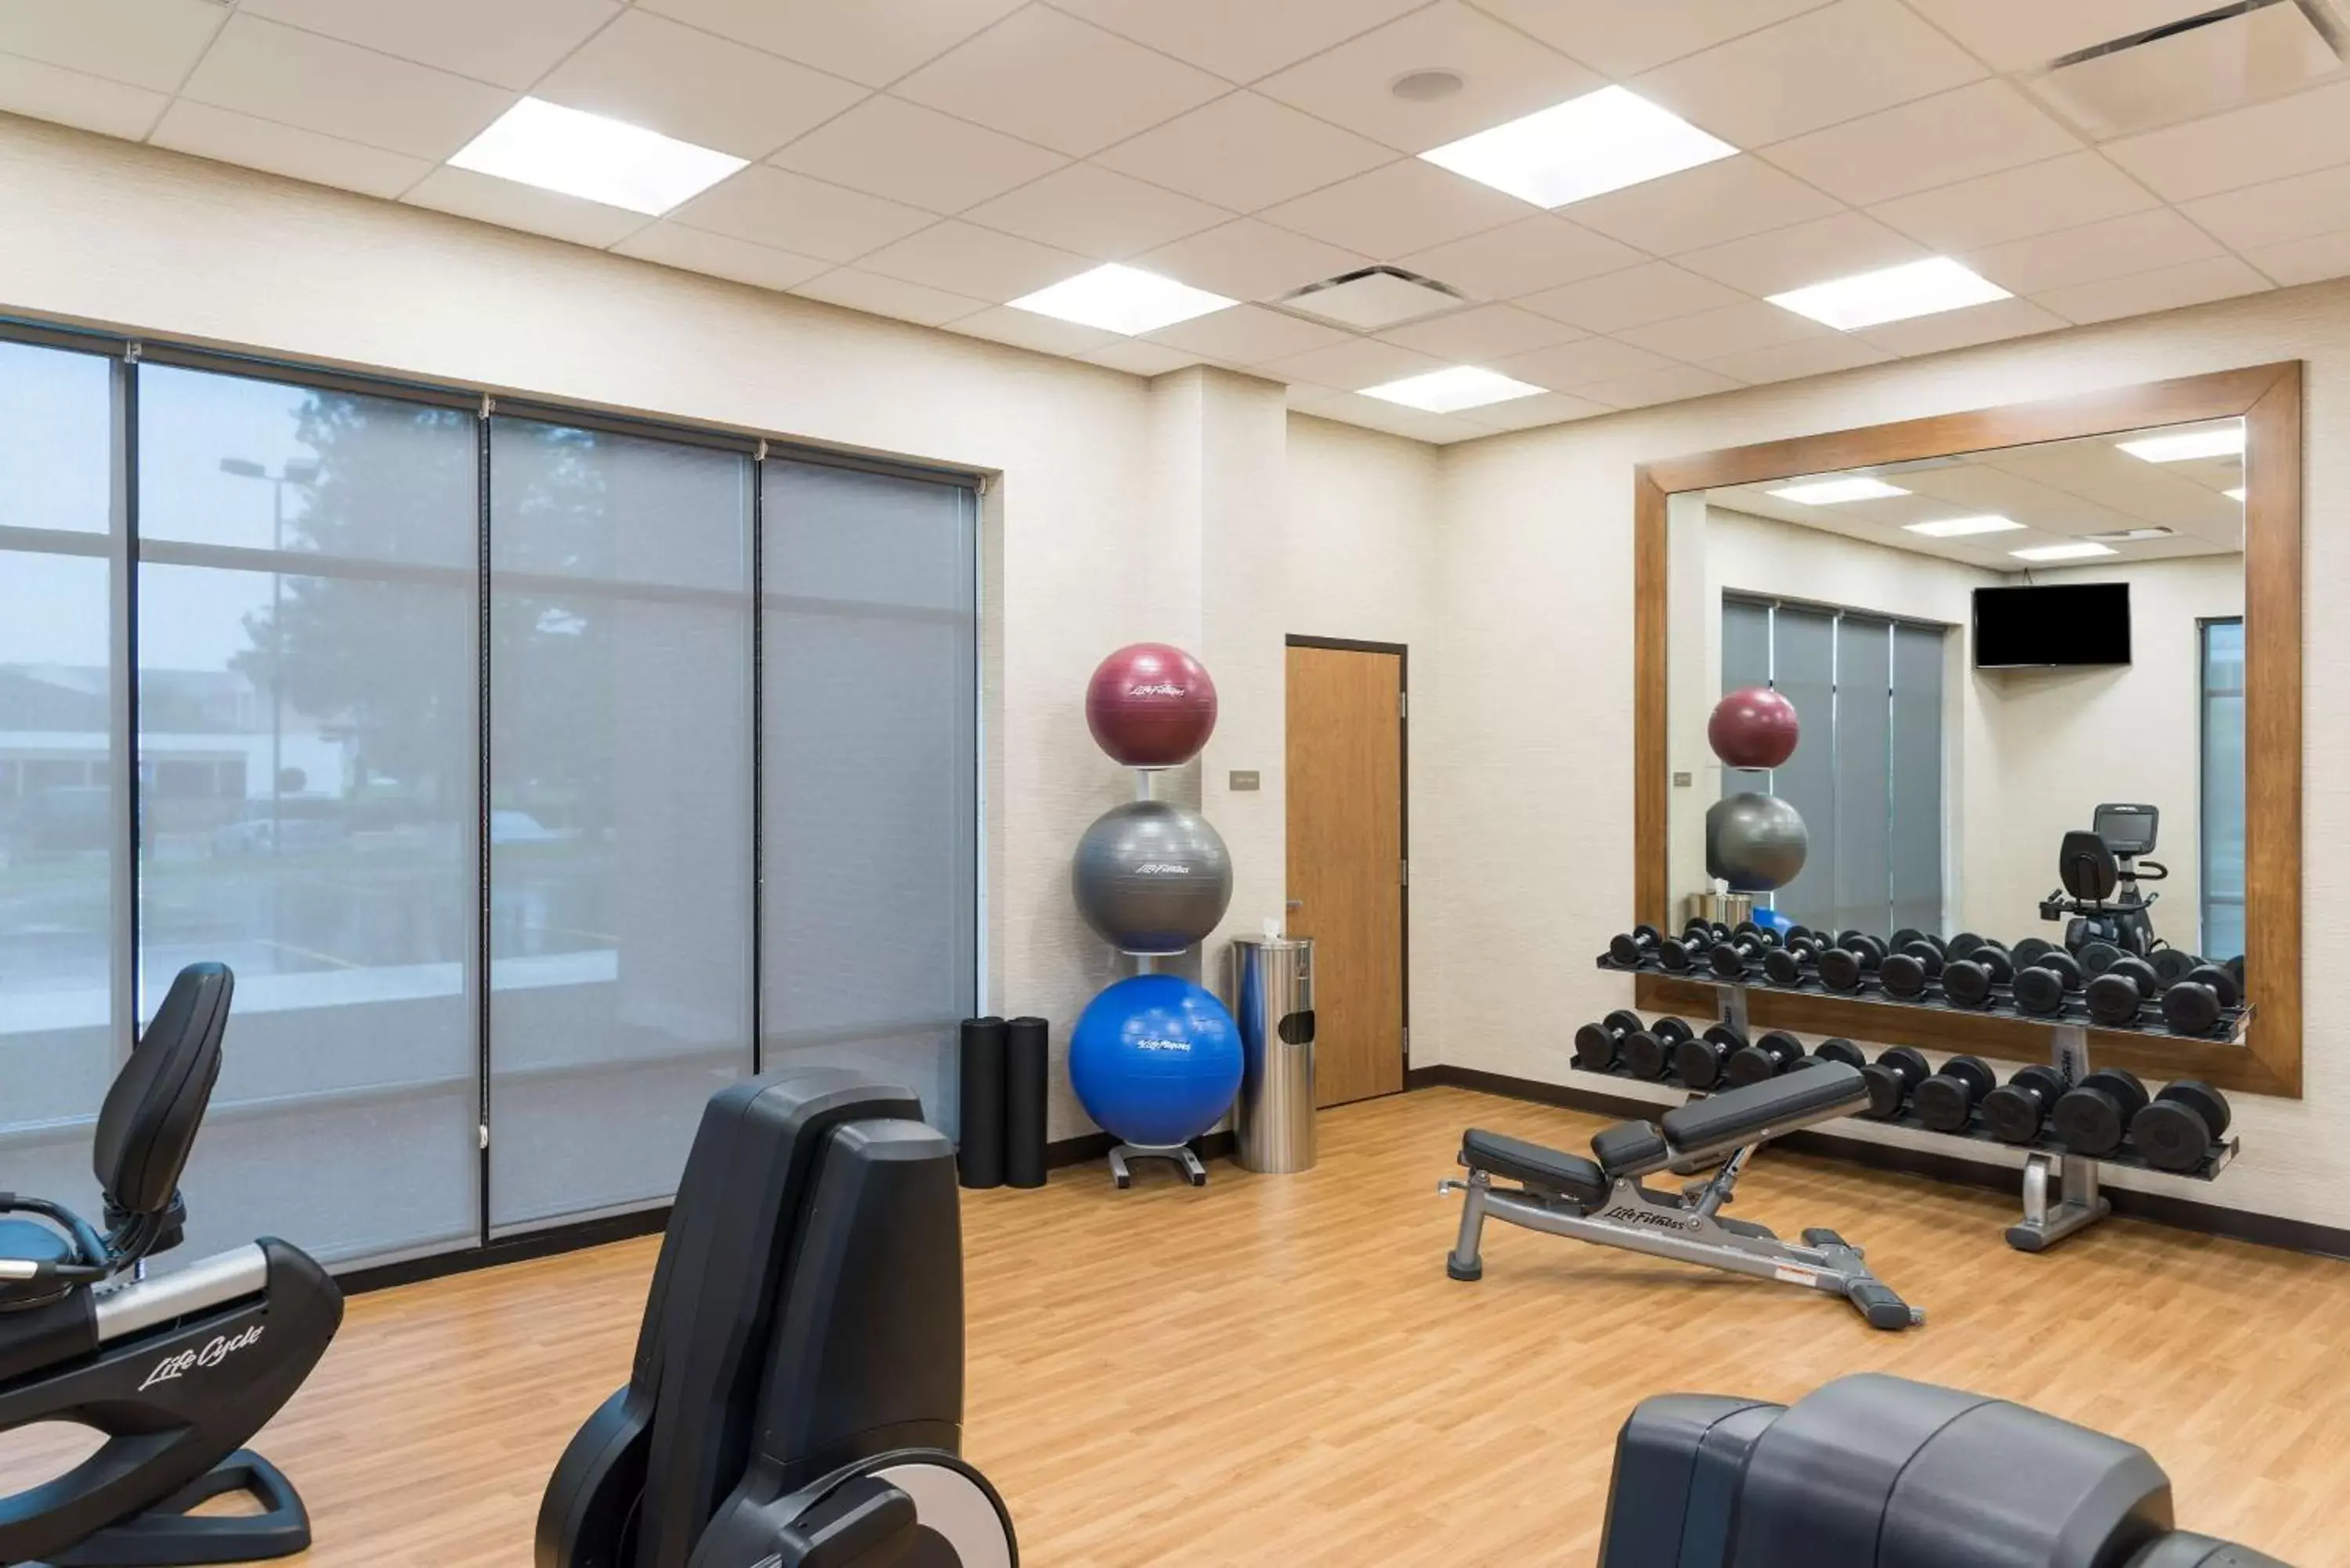 Fitness centre/facilities, Fitness Center/Facilities in Hyatt Place Ann Arbor